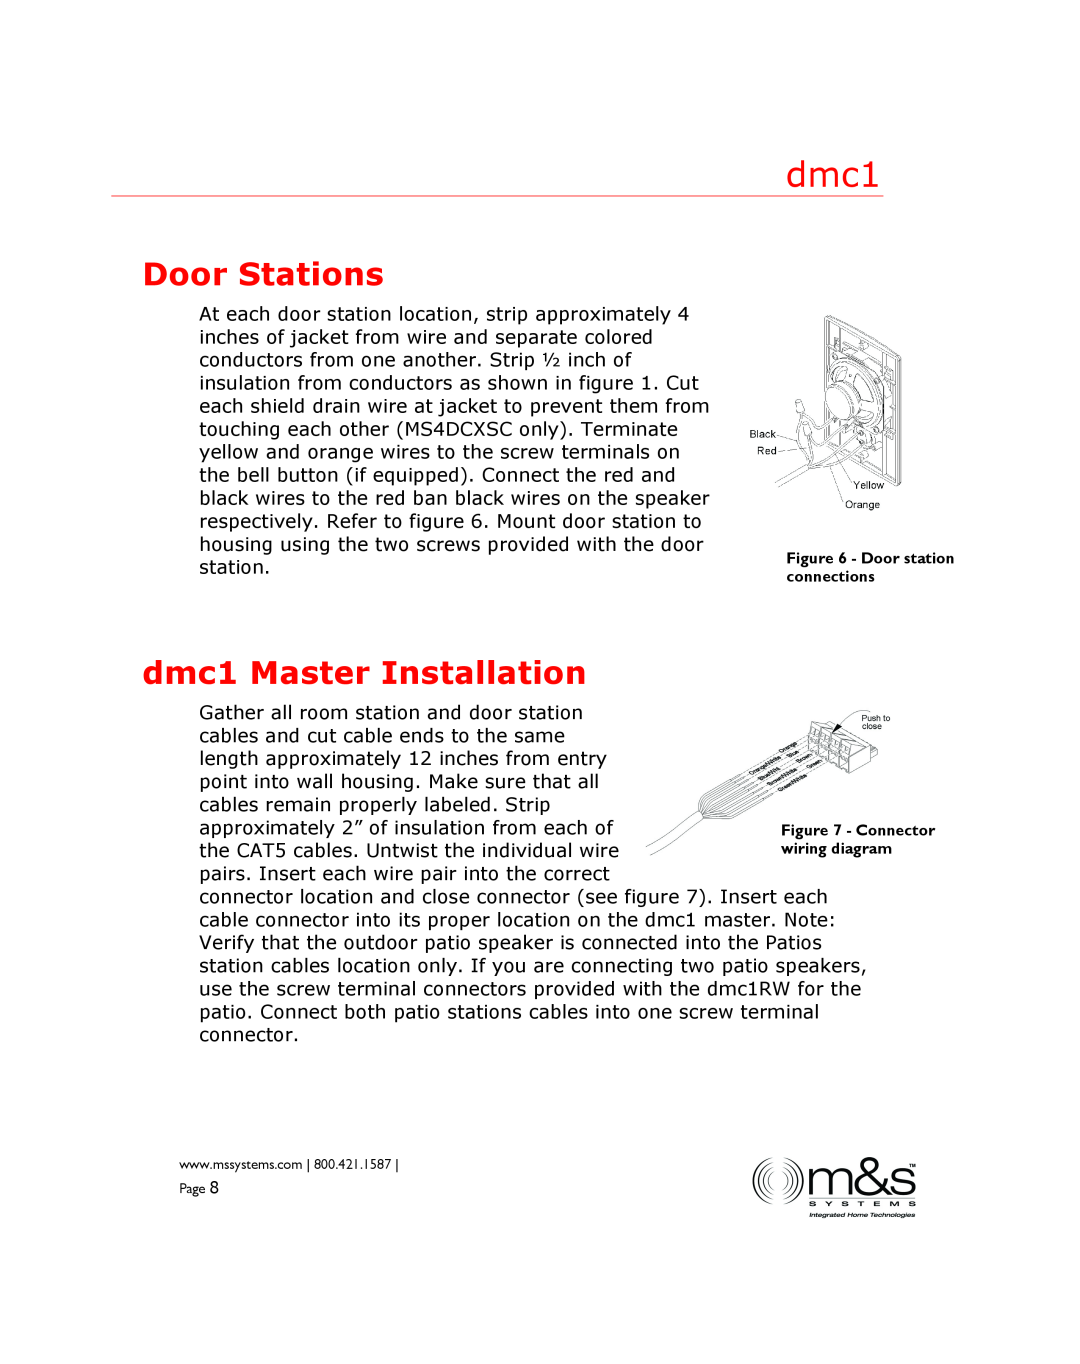 M&S Systems manual Door Stations, dmc1 Master Installation 